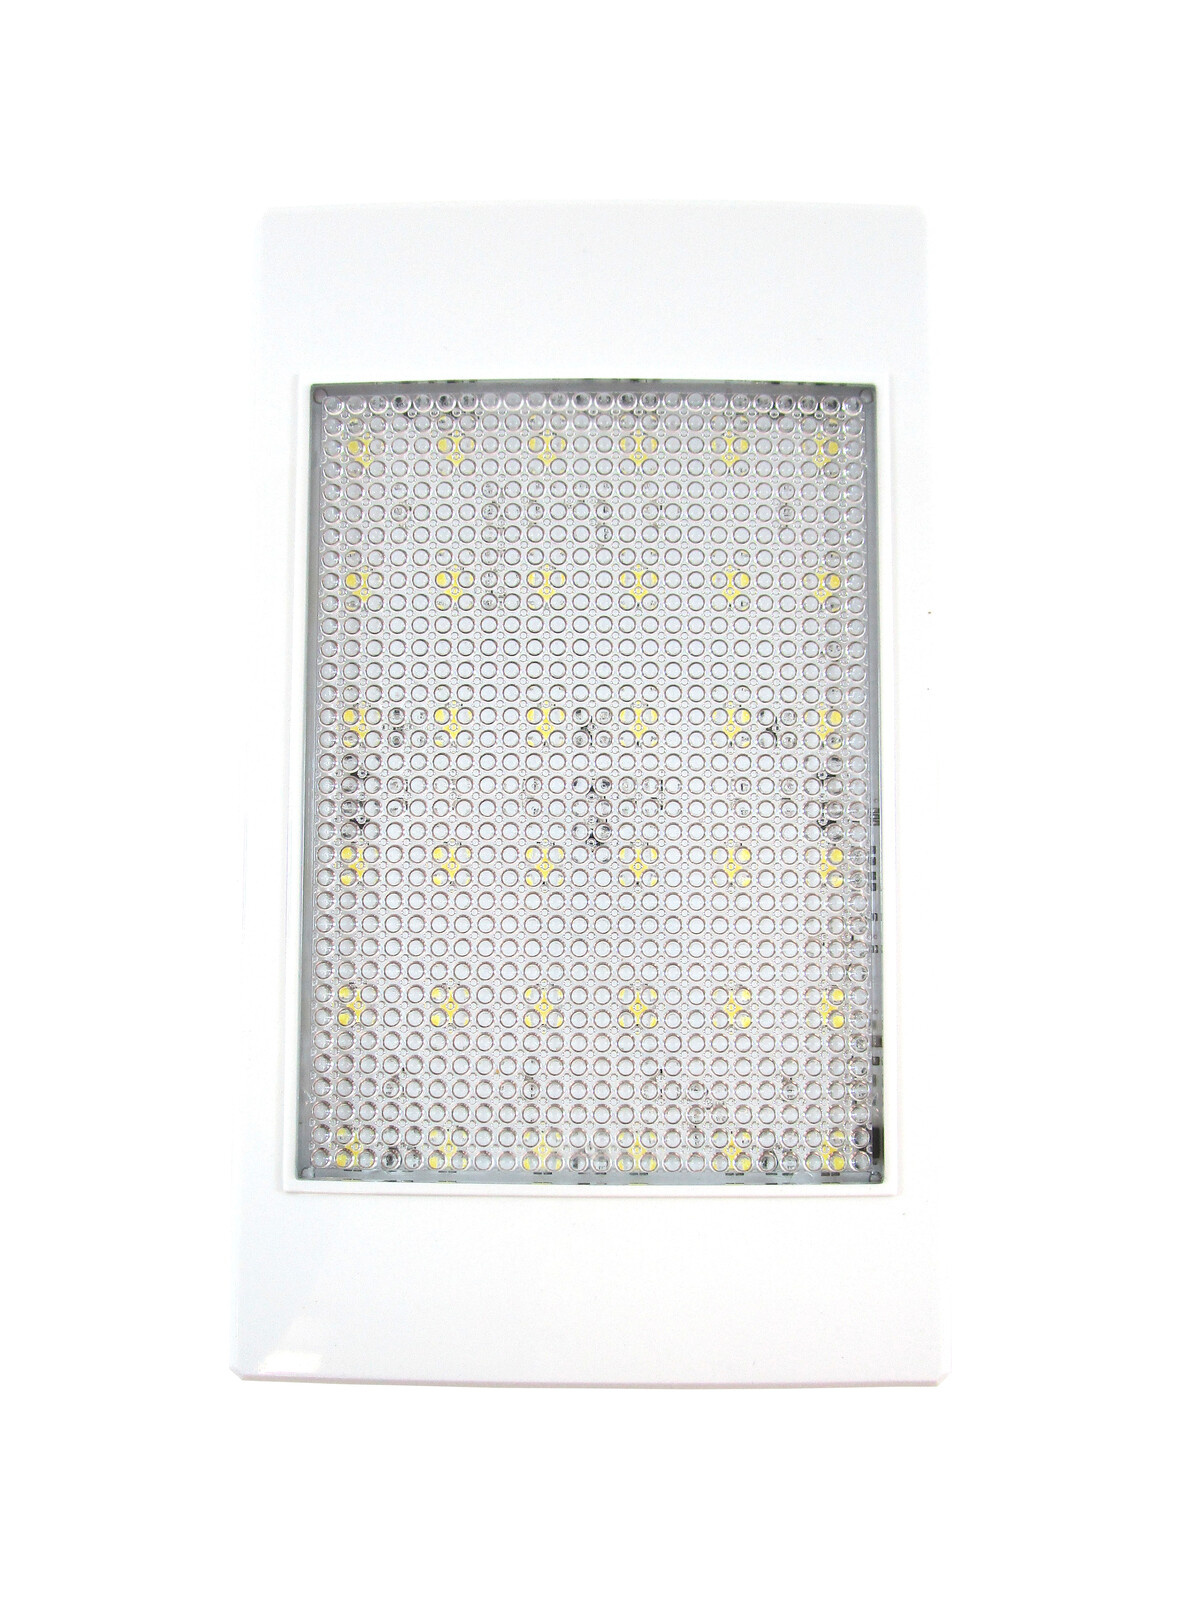 QLED 12V LED Interior / Exterior Rectangular LED Light